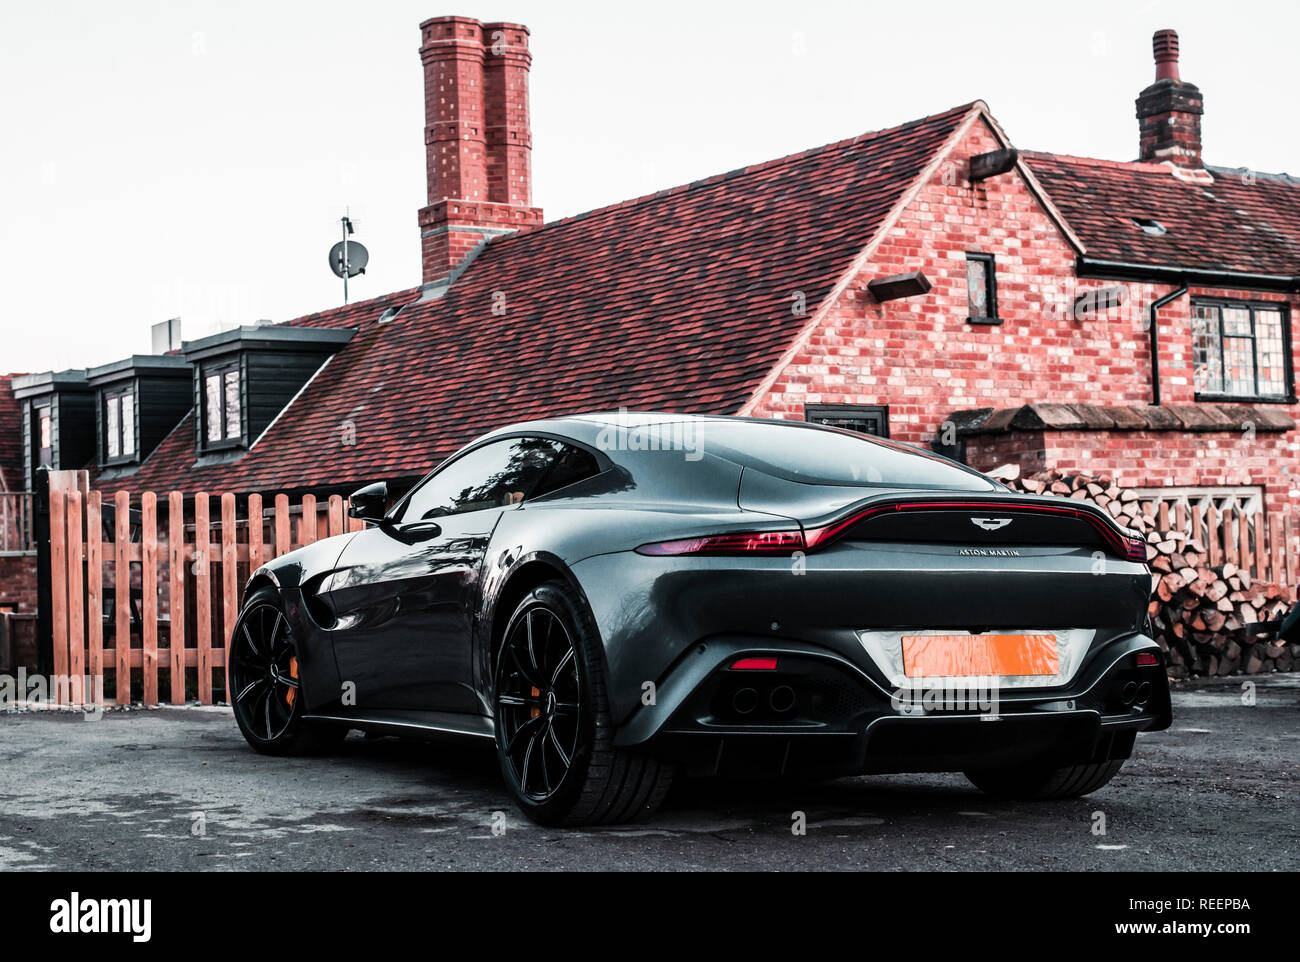 Aston Martin Vantage hinteren drei Viertel Ansicht vor dem Haus Stockfoto